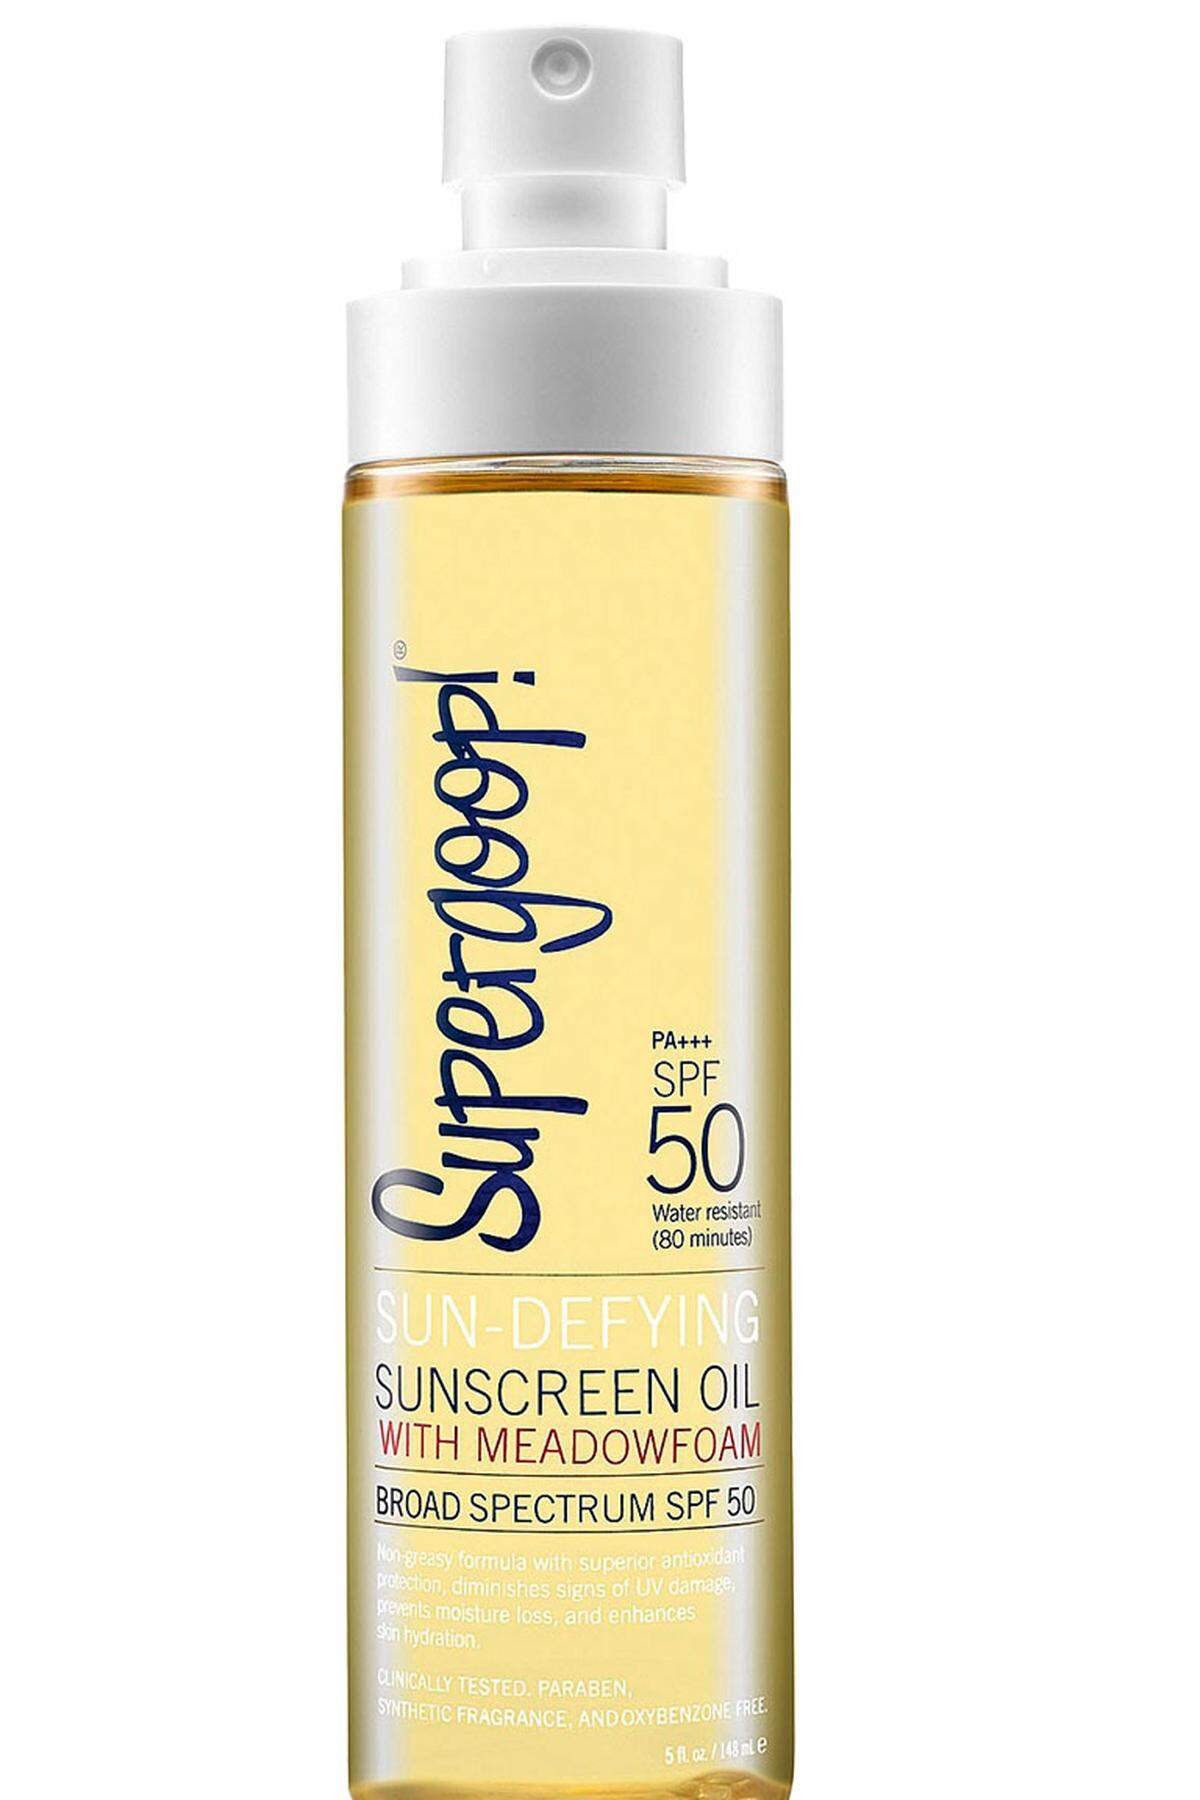 Sun-Defying Sunscreen Oil von Supergoop um 12 Euro über niche-beauty.at